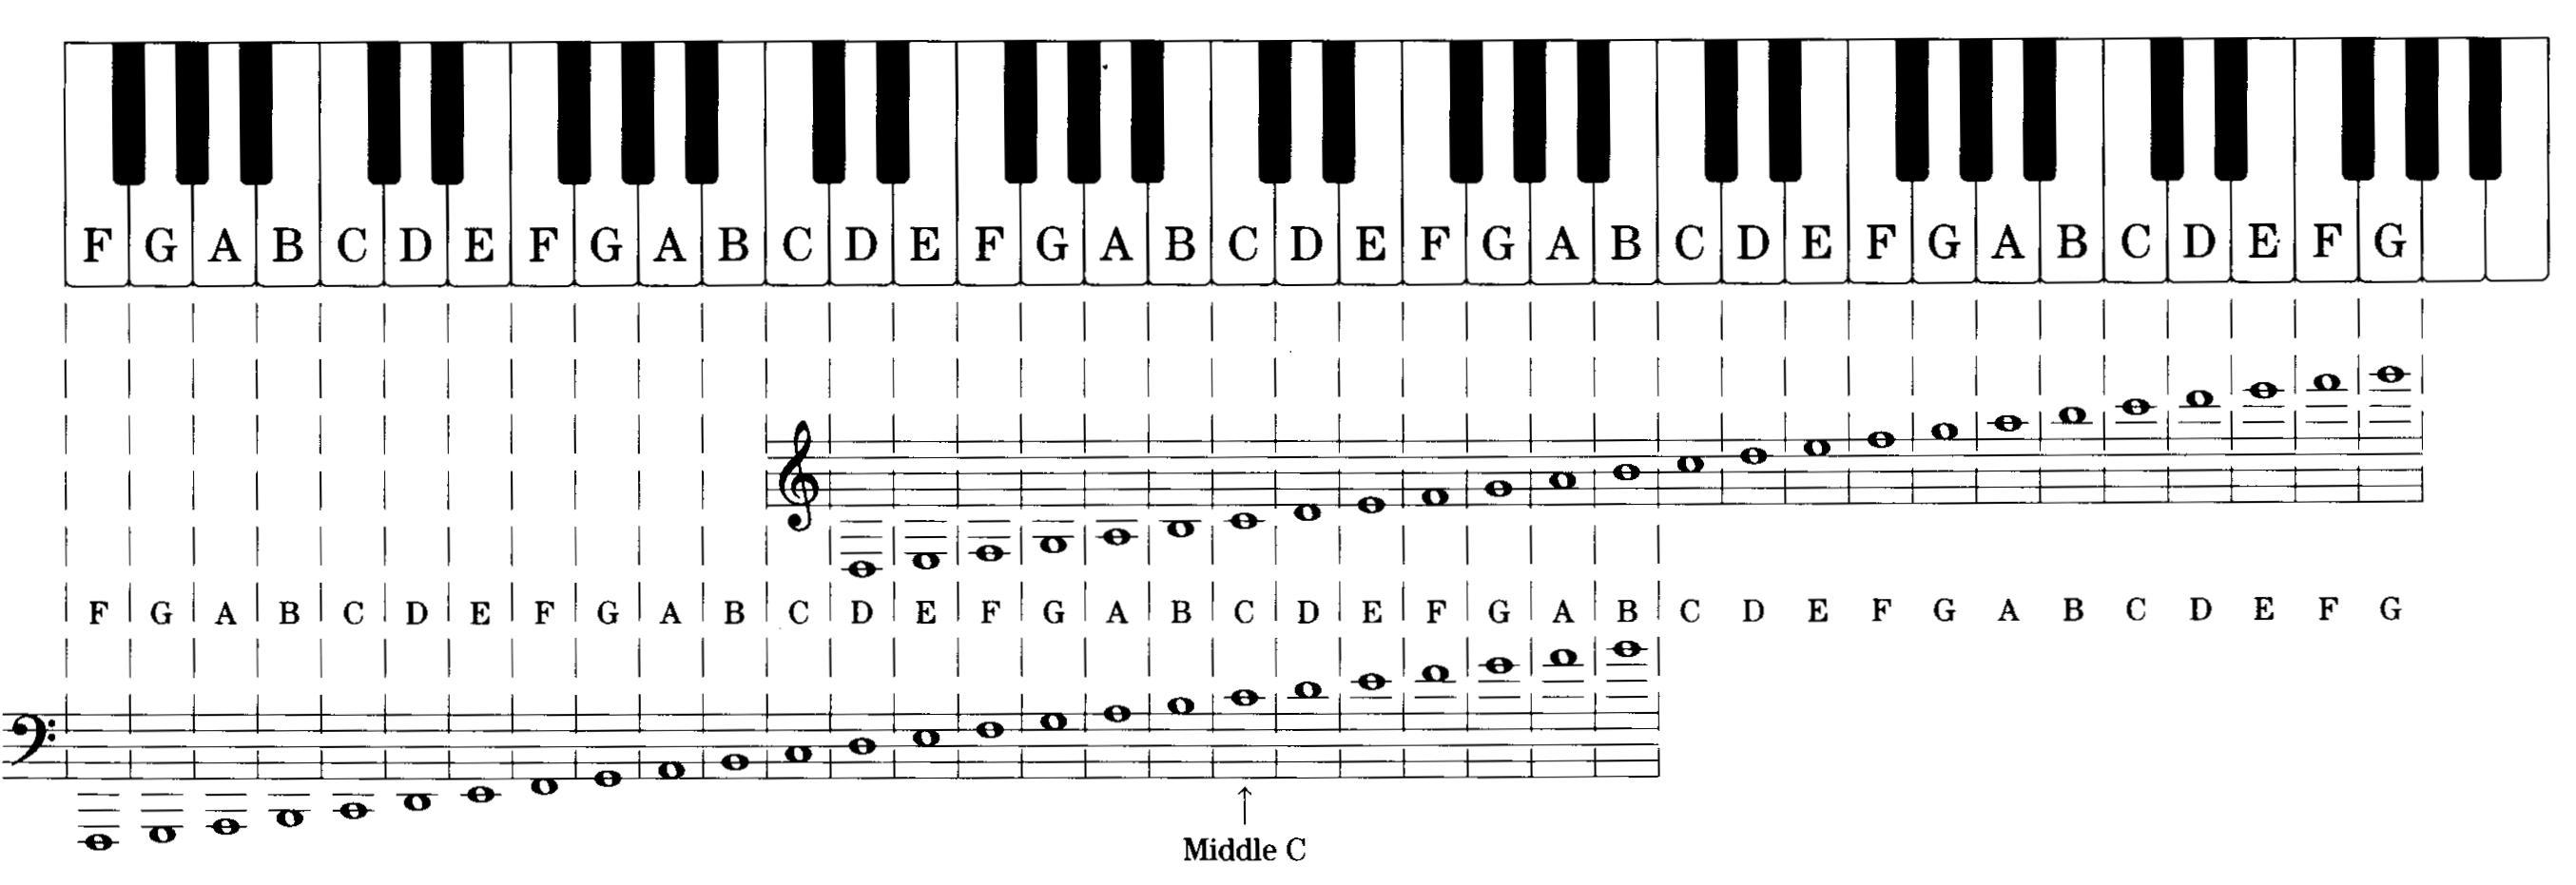 Ноты подписанные басовые. Басовый ключ расположение нот на фортепиано. Расположение нот 2 октавы. Клавиатура фортепиано 88 клавиш. Расположение нот на клавиатуре фортепиано.